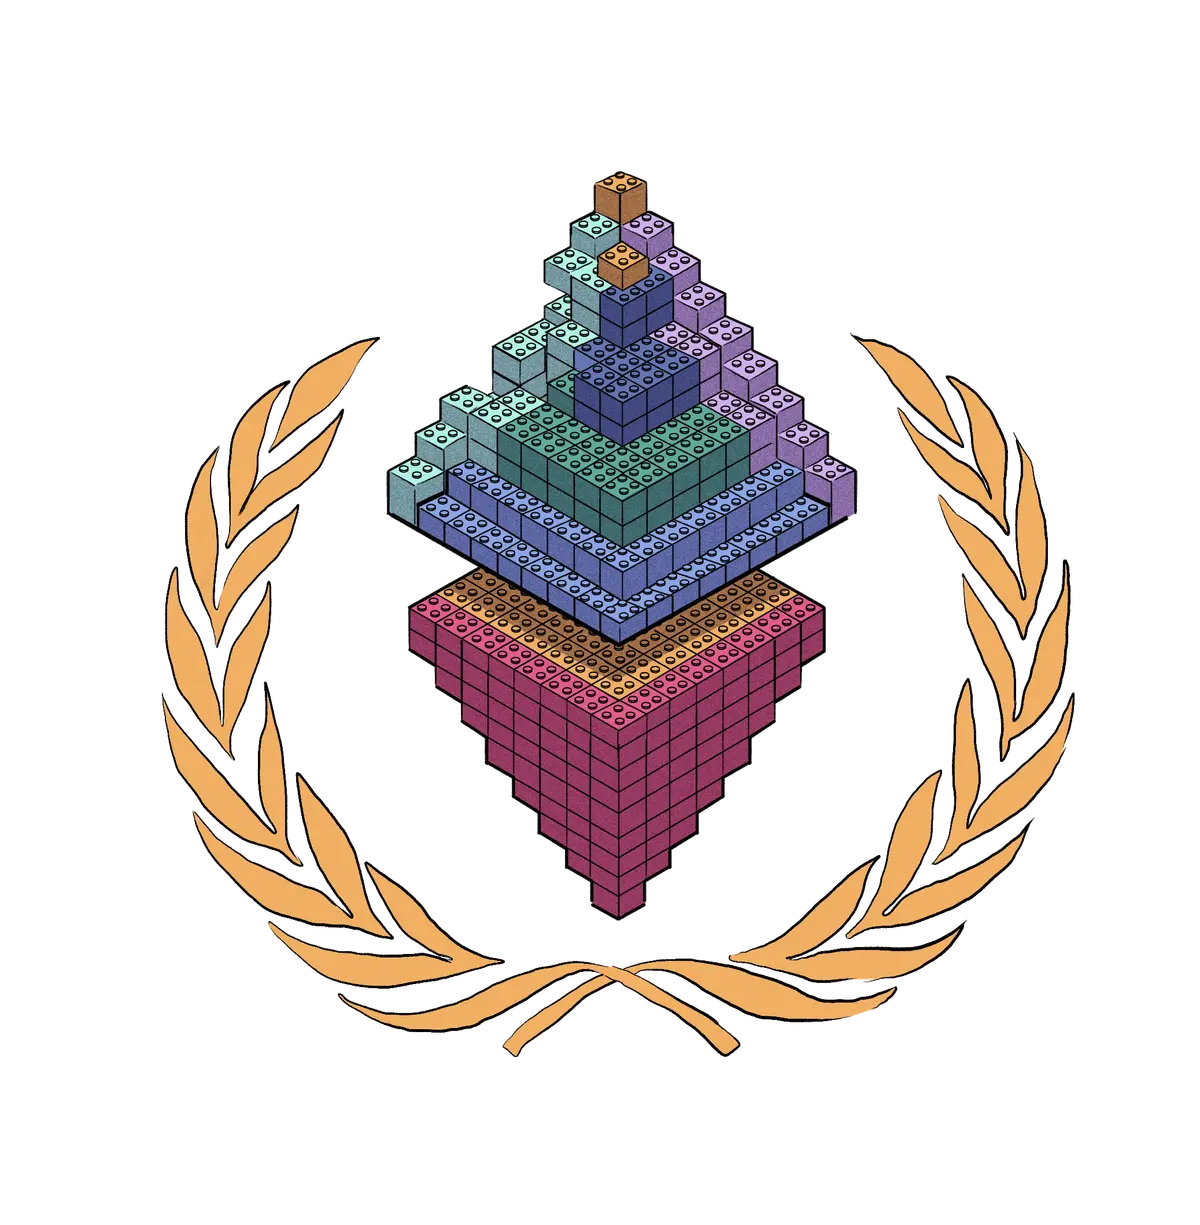 Логотип Ethereum, сложенный из конструктора Лего.